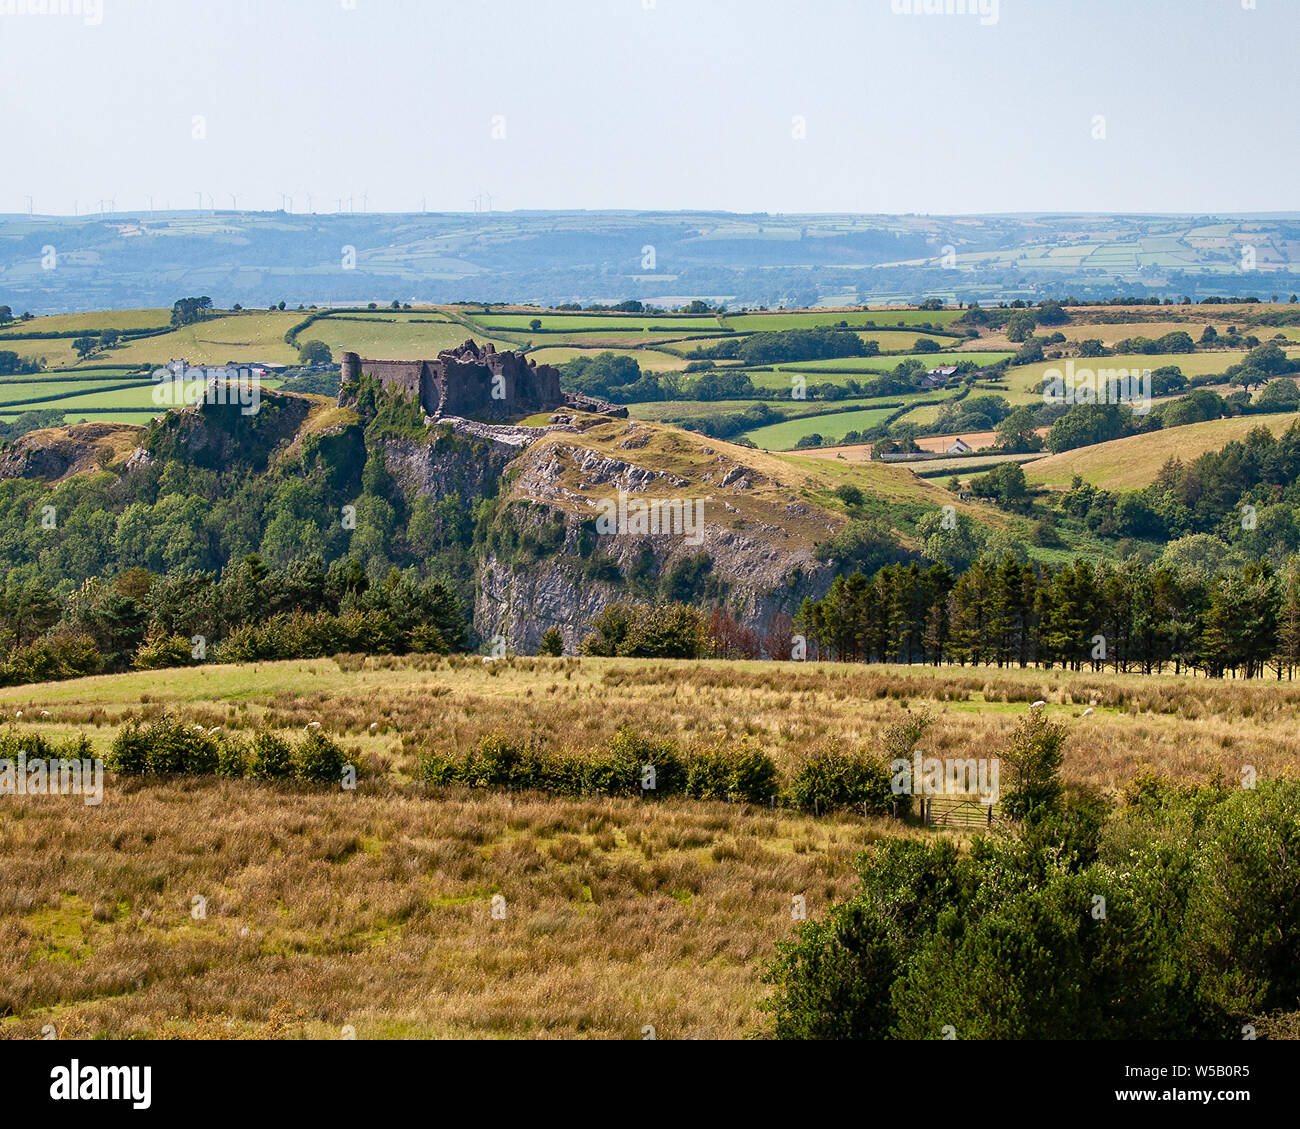 Carreg Cennen Castle dans le parc national de Brecon Beacons, vue depuis le sud-ouest. Pays de Galles, Royaume-Uni. Banque D'Images